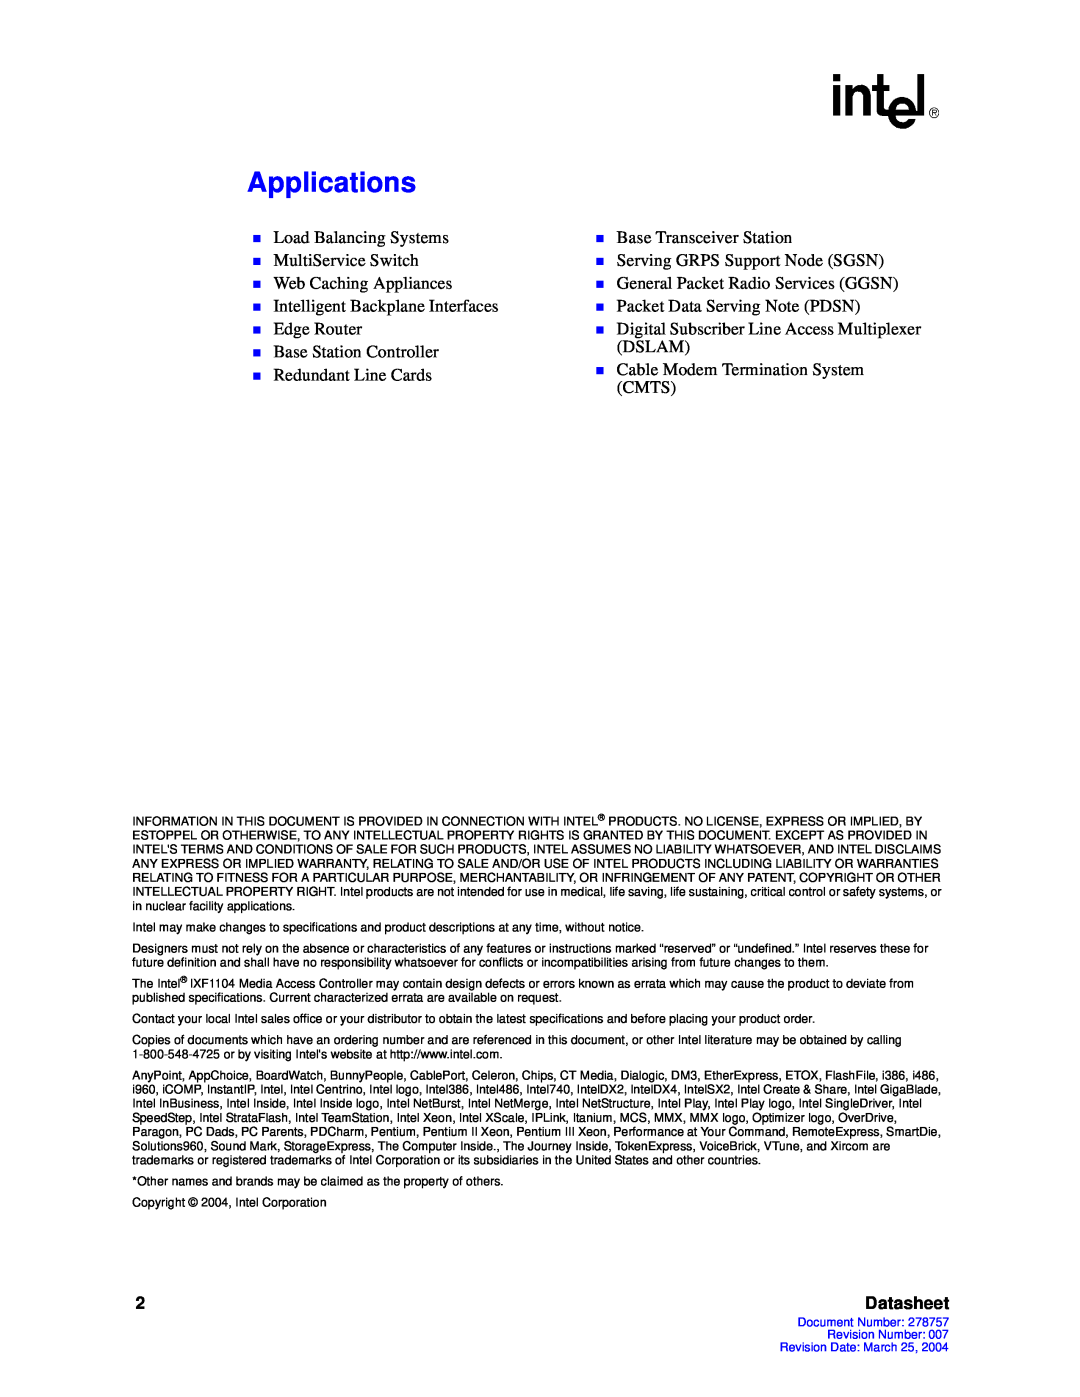 Intel IXF1104 manual Applications, Datasheet 